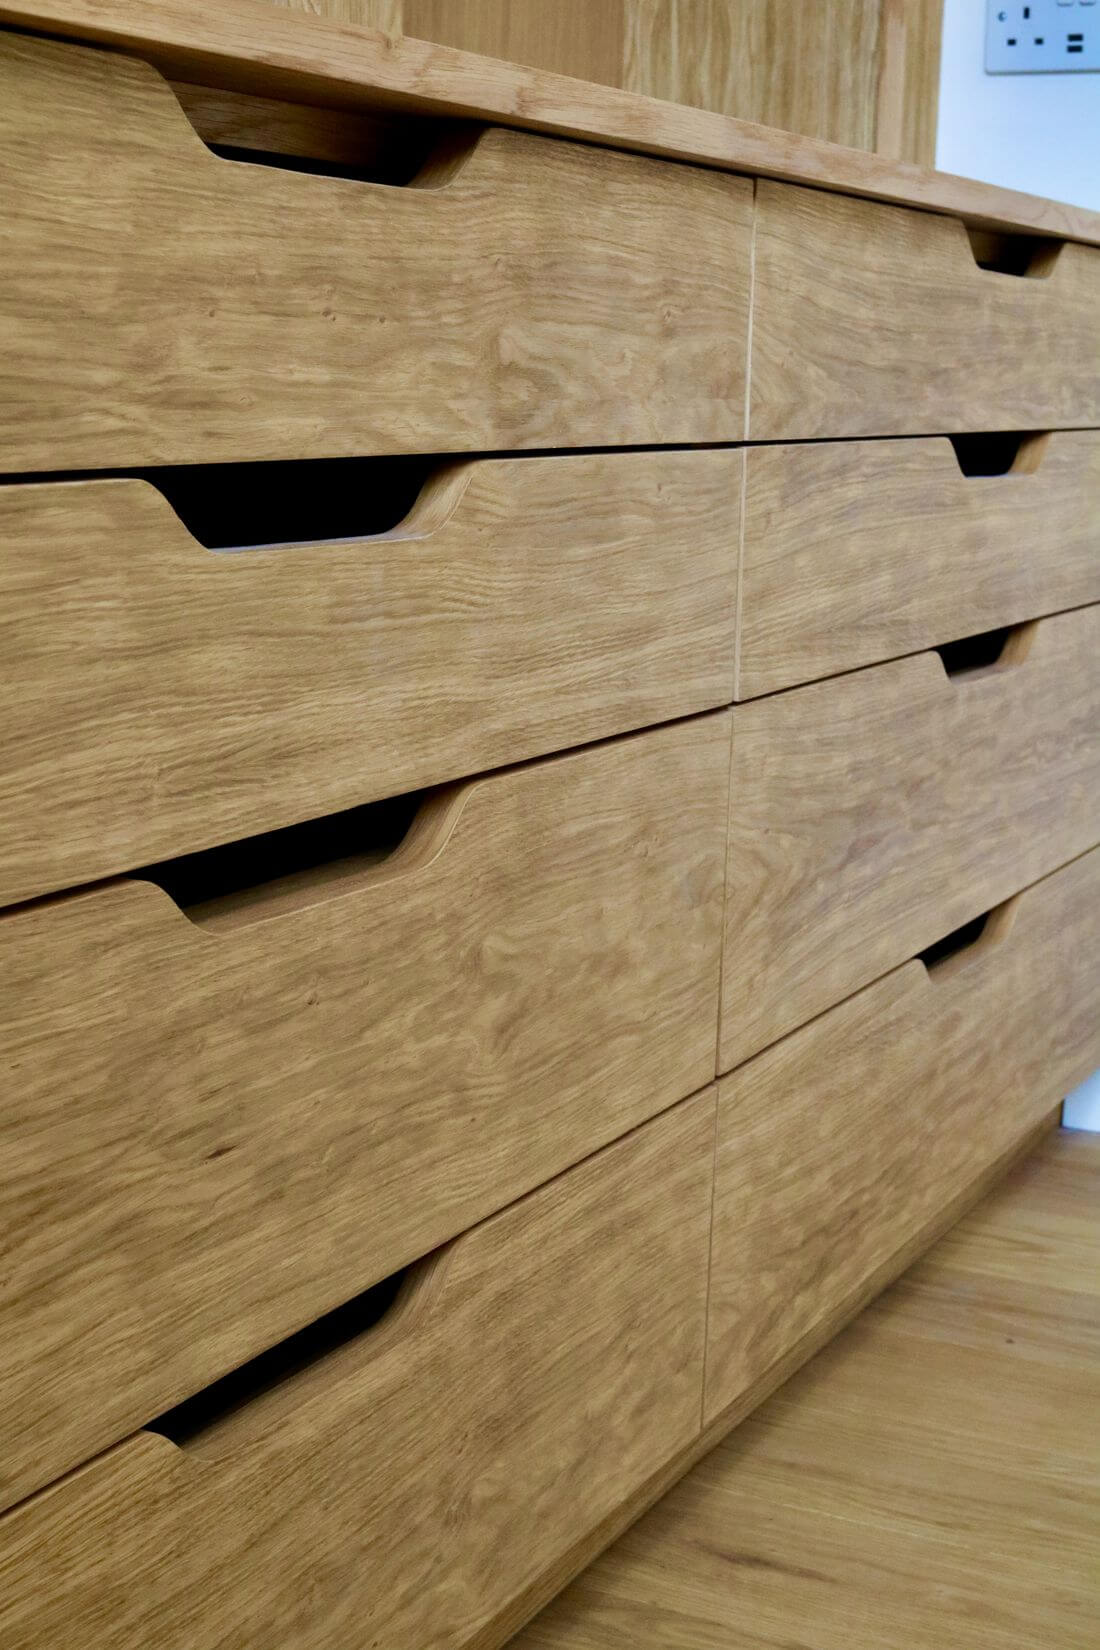 Bespoke handmade wooden drawers